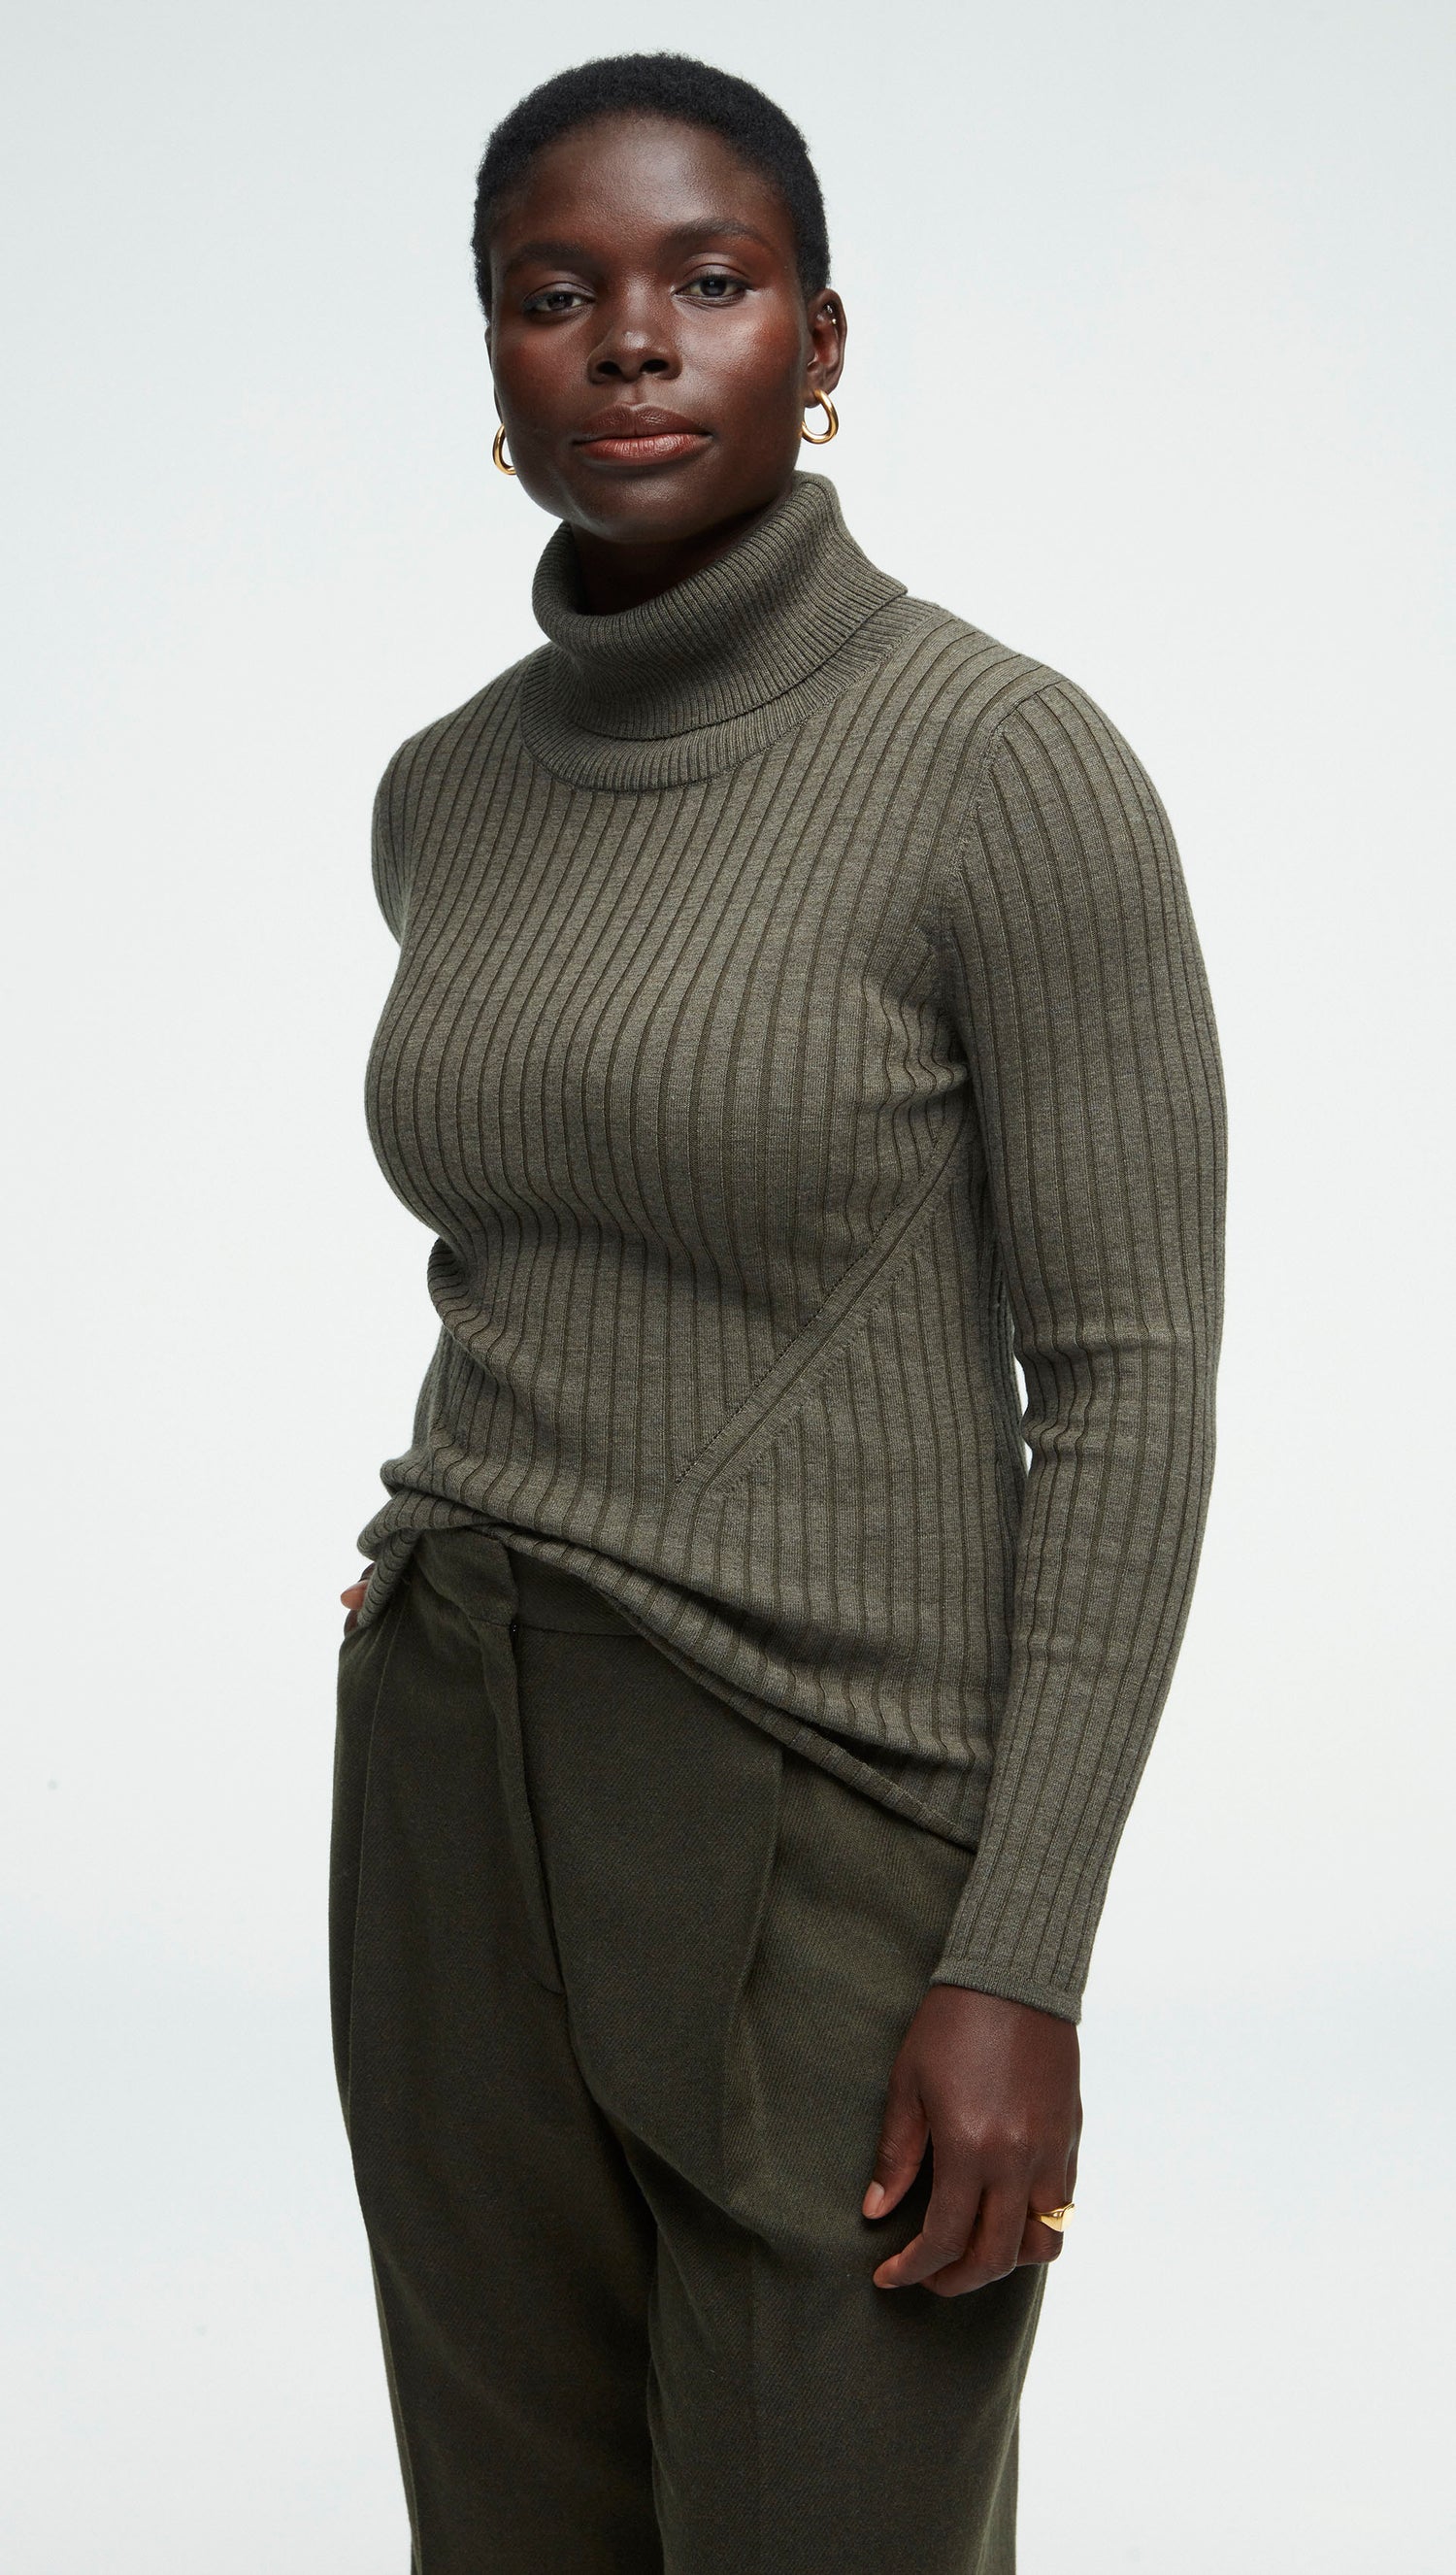 Ribbed Turtleneck in Merino Wool, Women's Sweaters